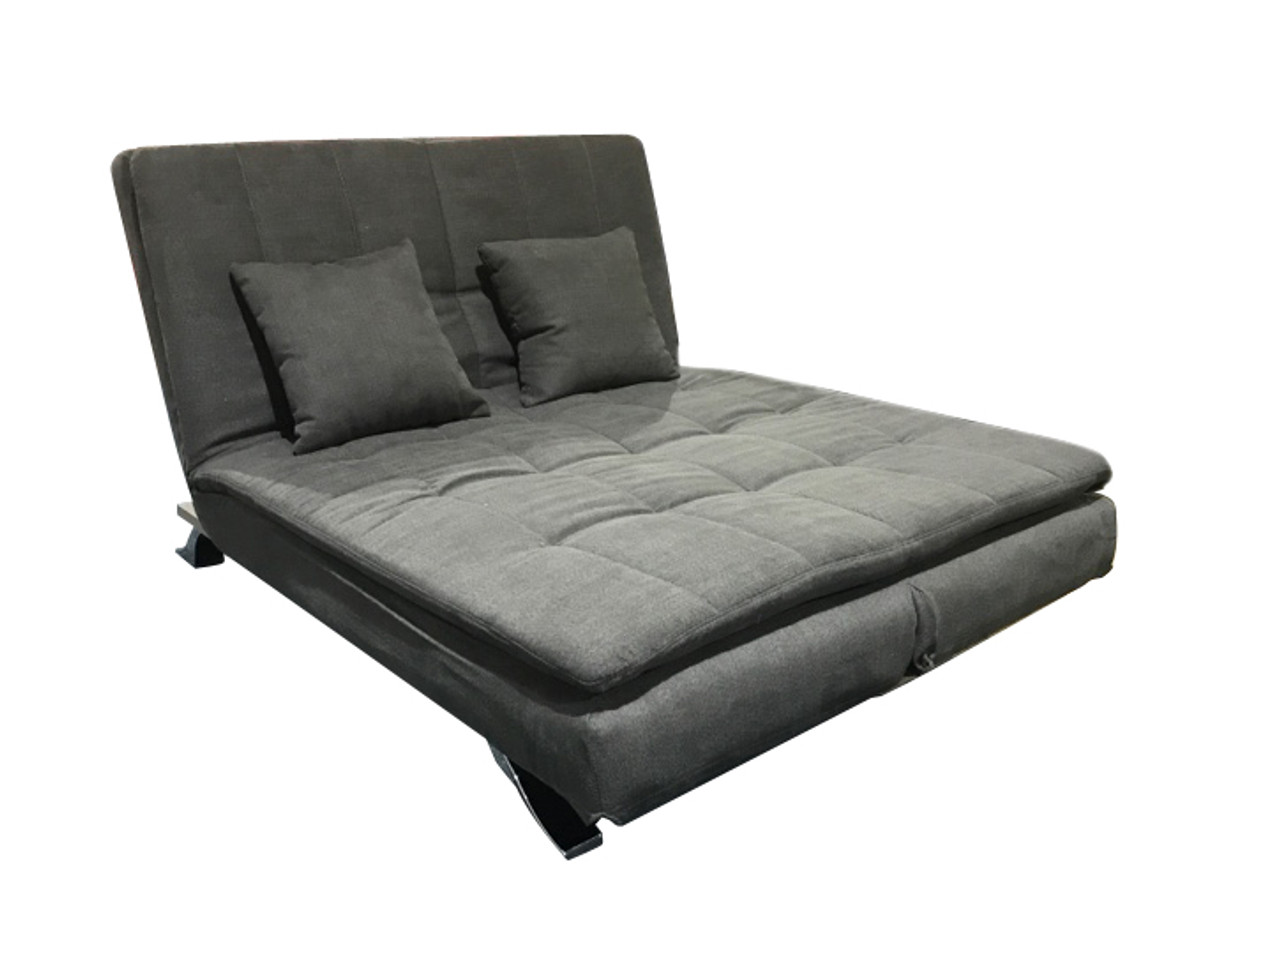 bi fold sofa bed mattress